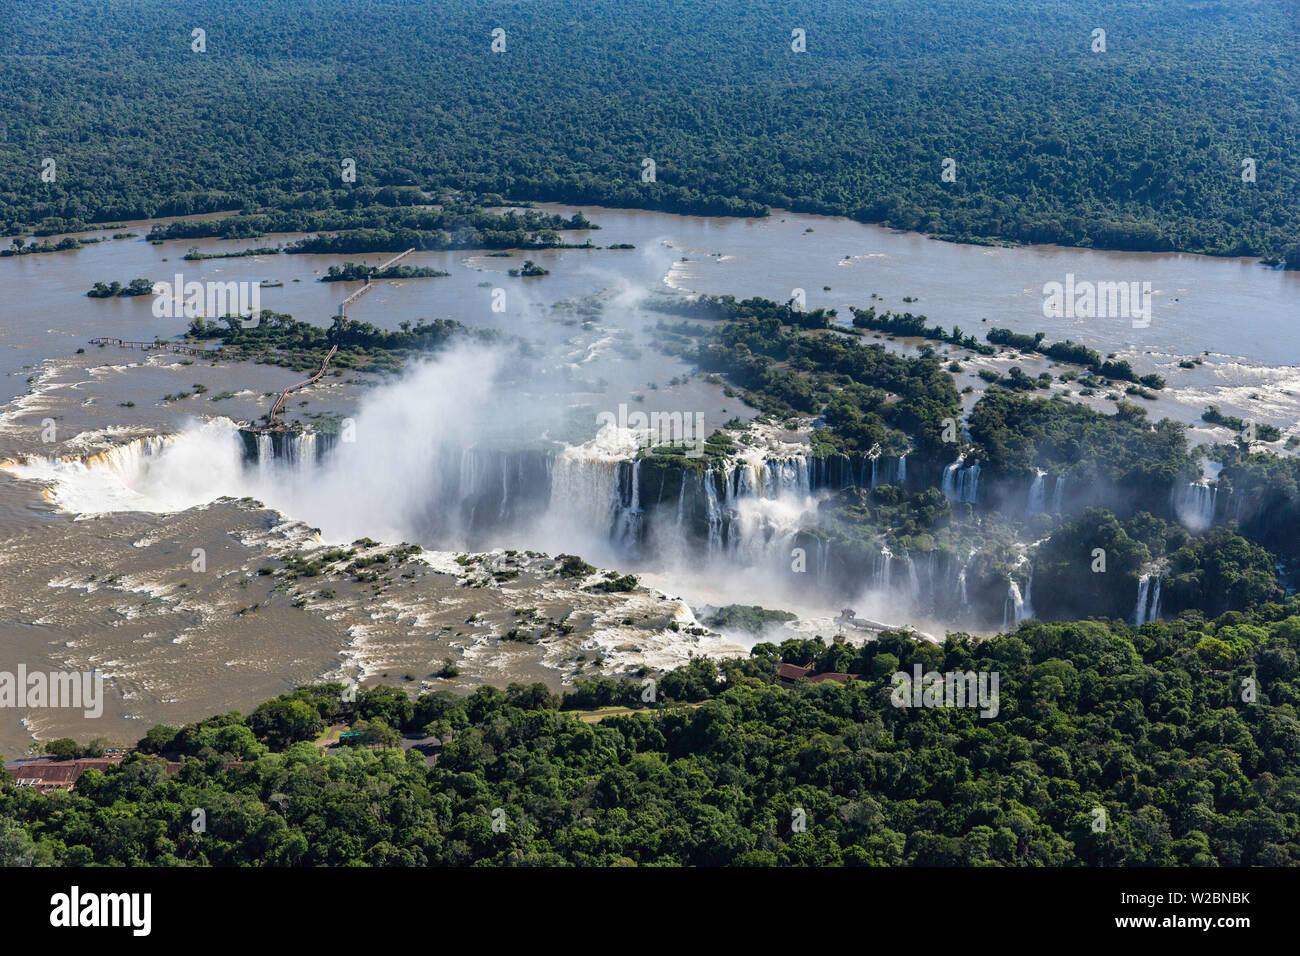 Vue aérienne sur Iguacu Falls, Iguacu (Iguazu) Parc National, Brésil Banque D'Images